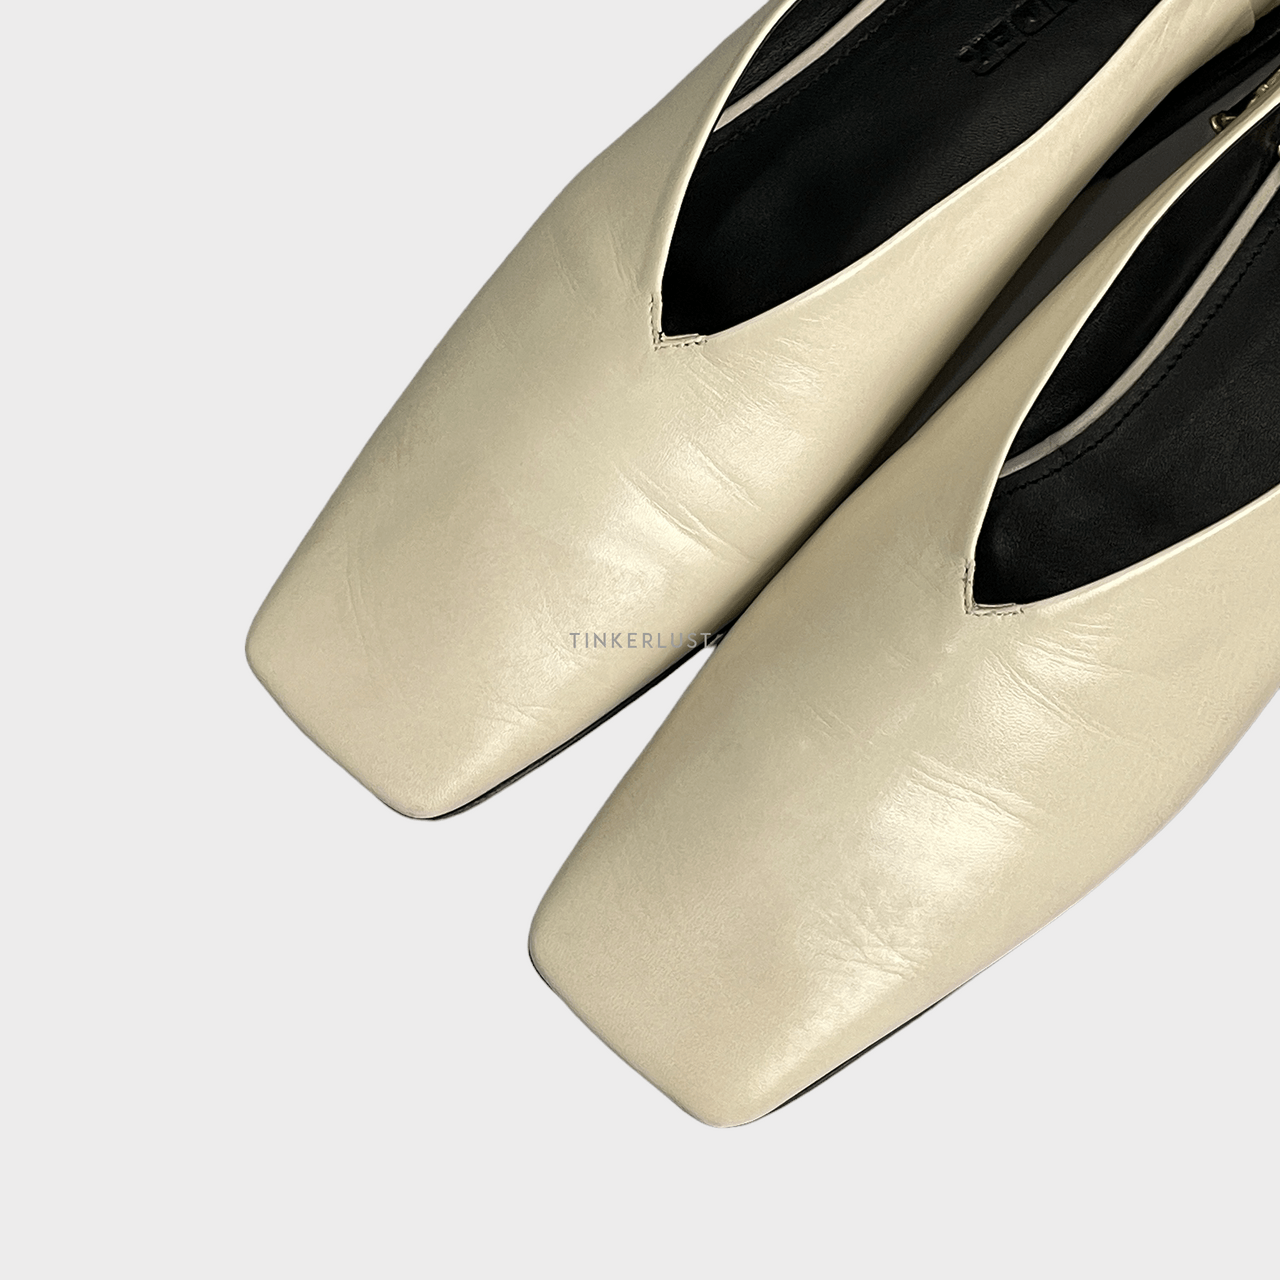 Jil Sander Embellished Glossed-leather Ivory Ballet Flats